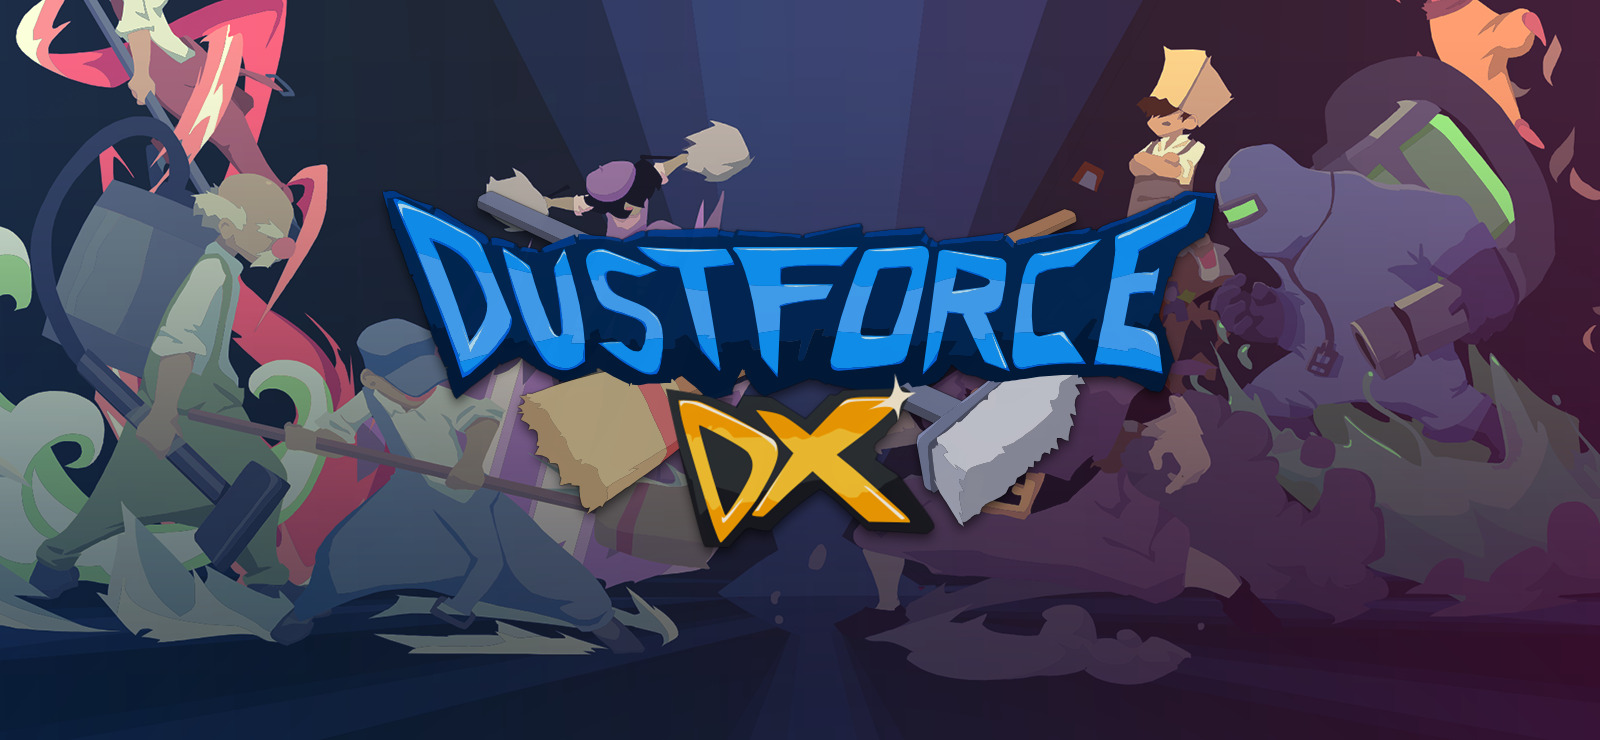 dustforce dx twitch